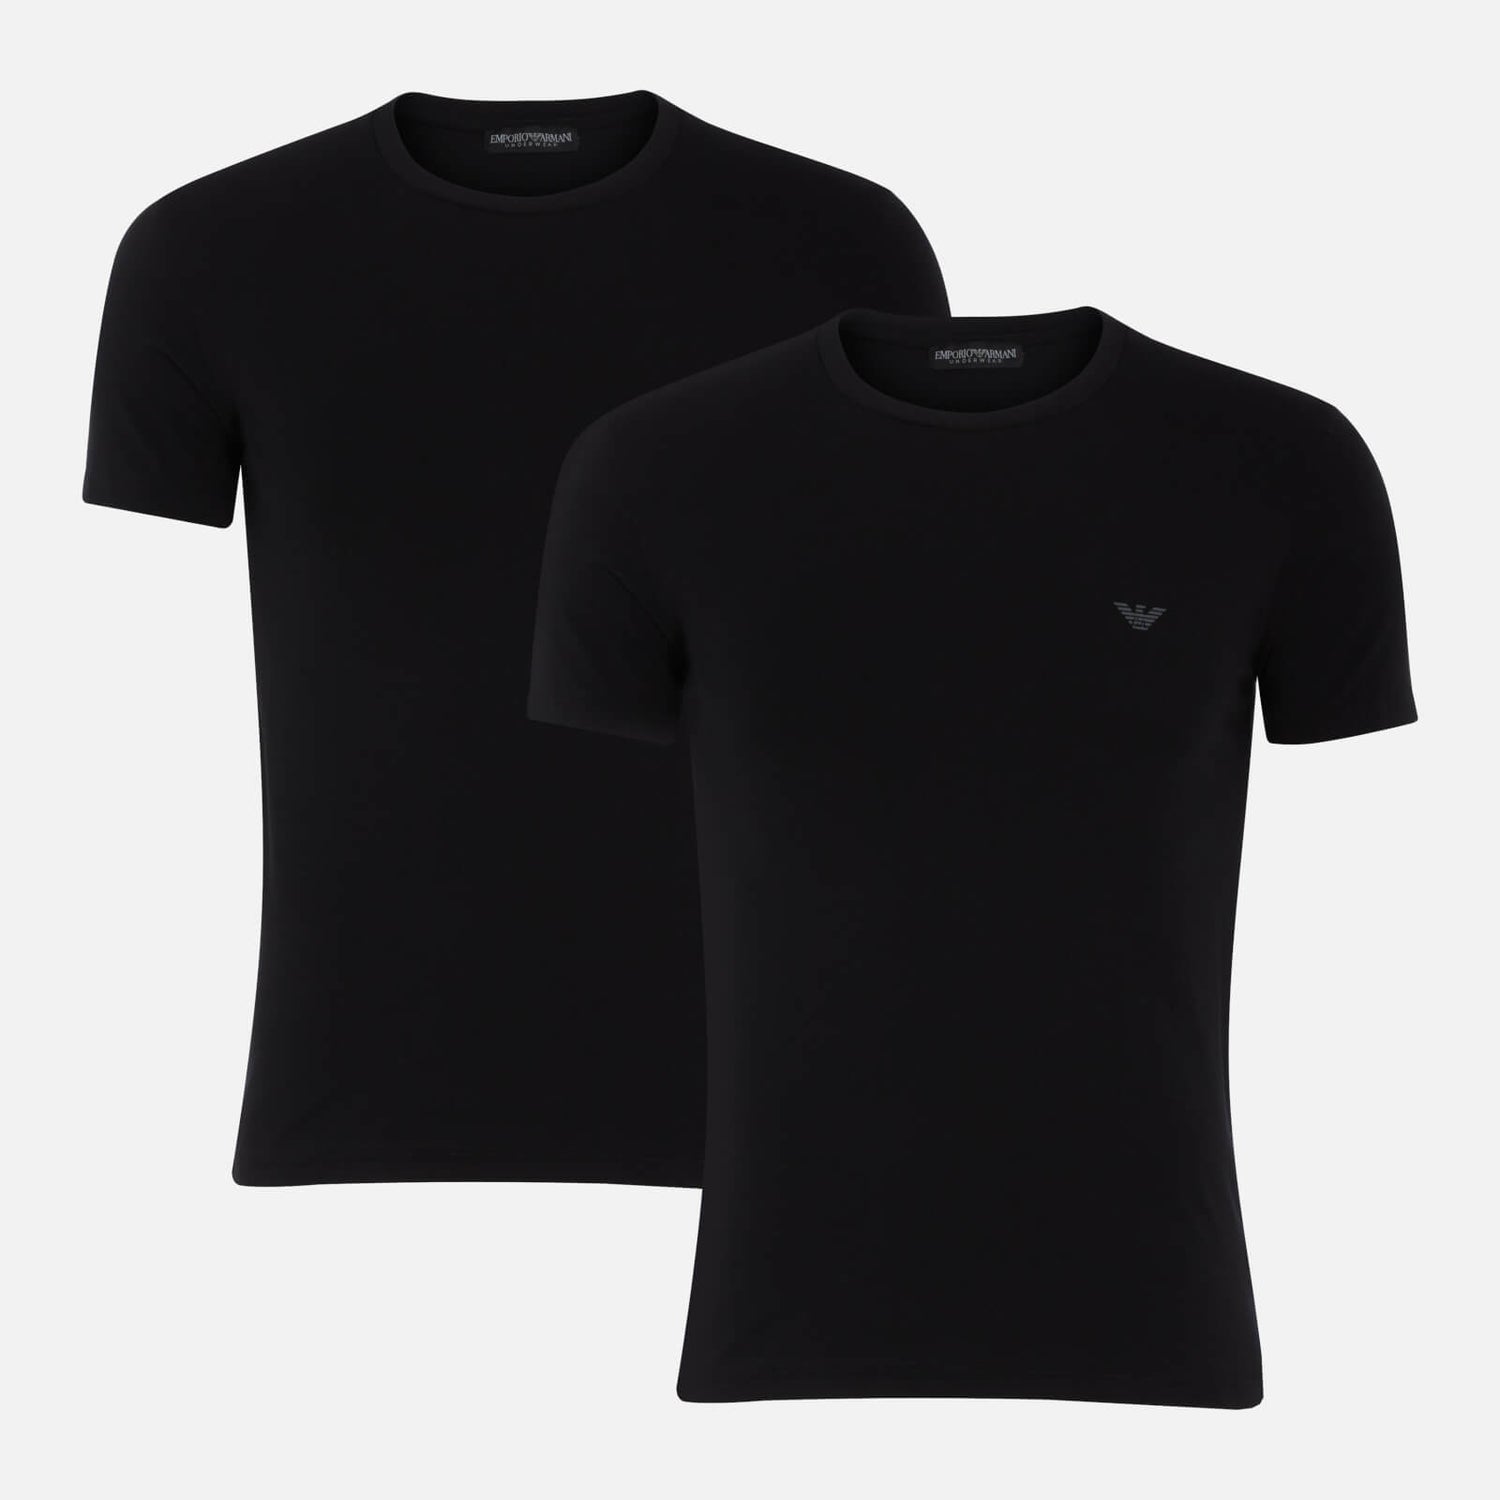 Emporio Armani Men's 2-Pack Endurance T-Shirts - Black/Black - S